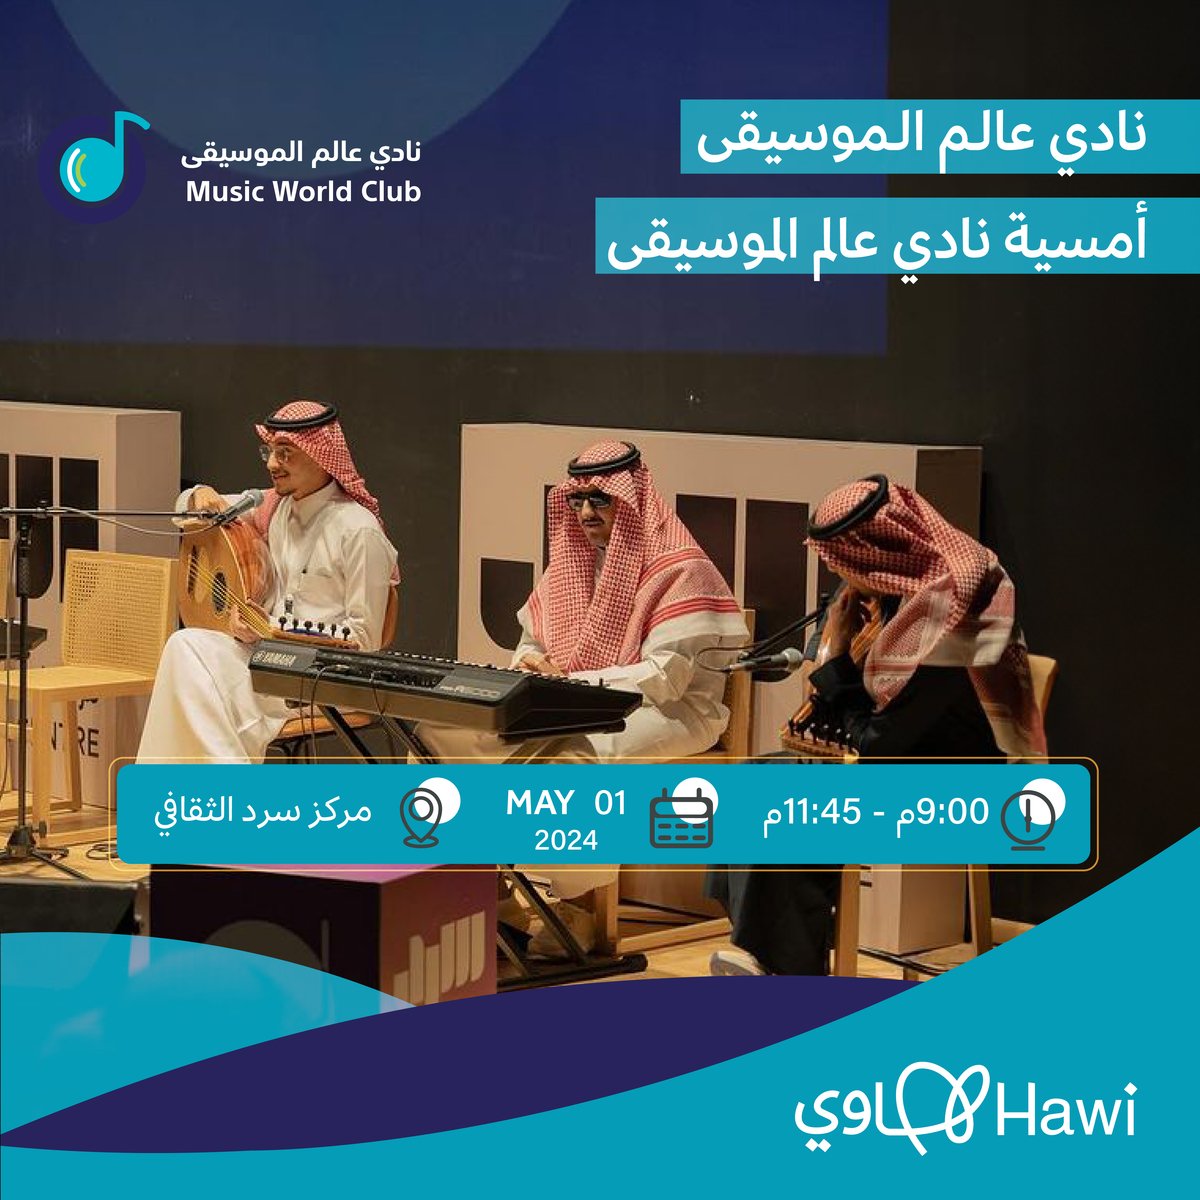 أمسية #نادي_عالم_الموسيقى
hawi.gov.sa/events/event-d…
@Saudi_Hawi @Hawi_events